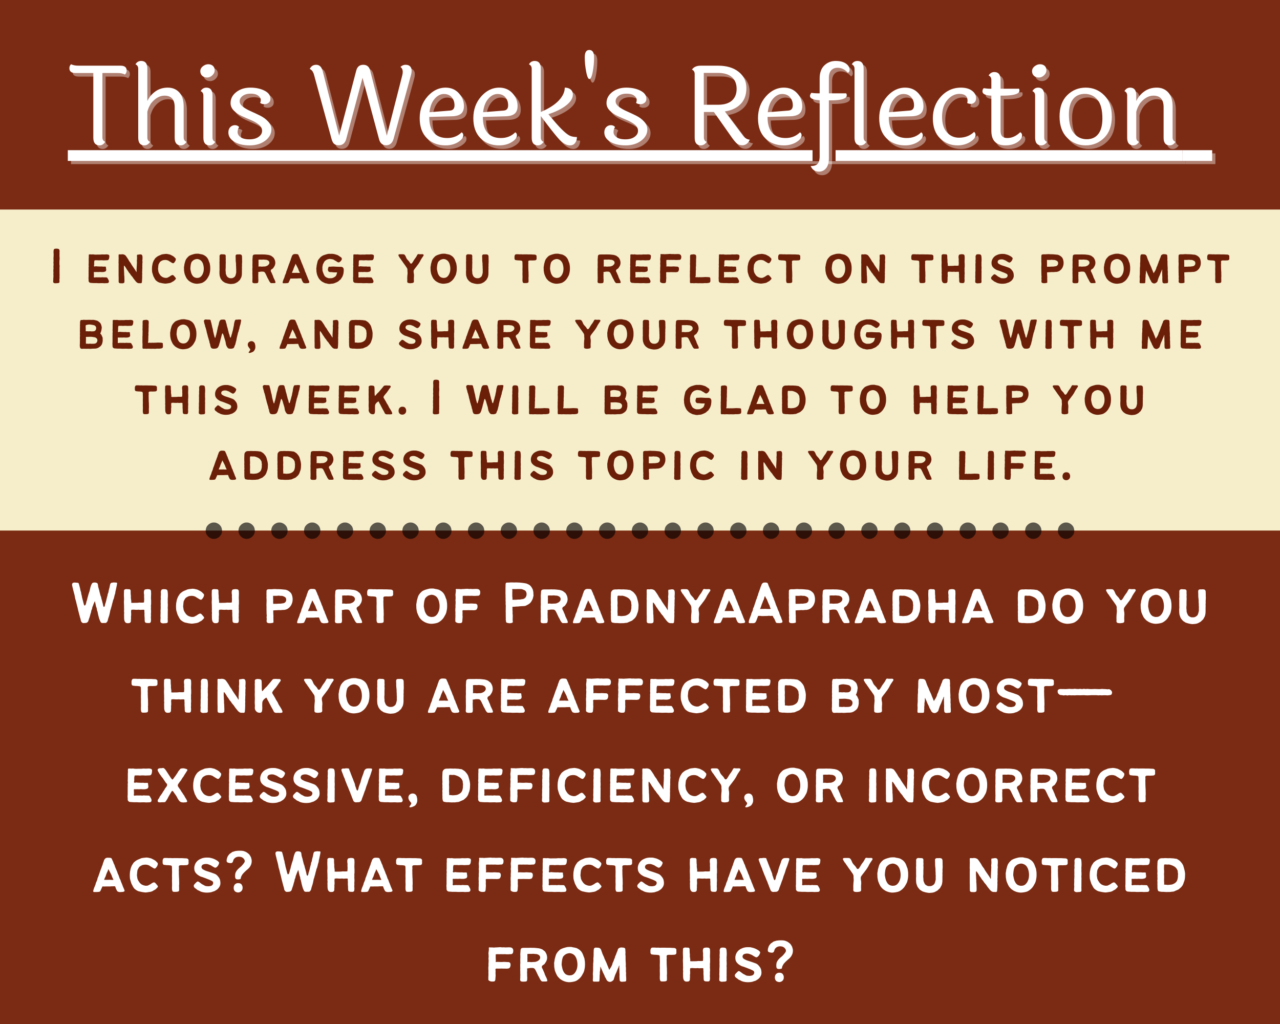 This Week’s Reflection On PradnyaApradha